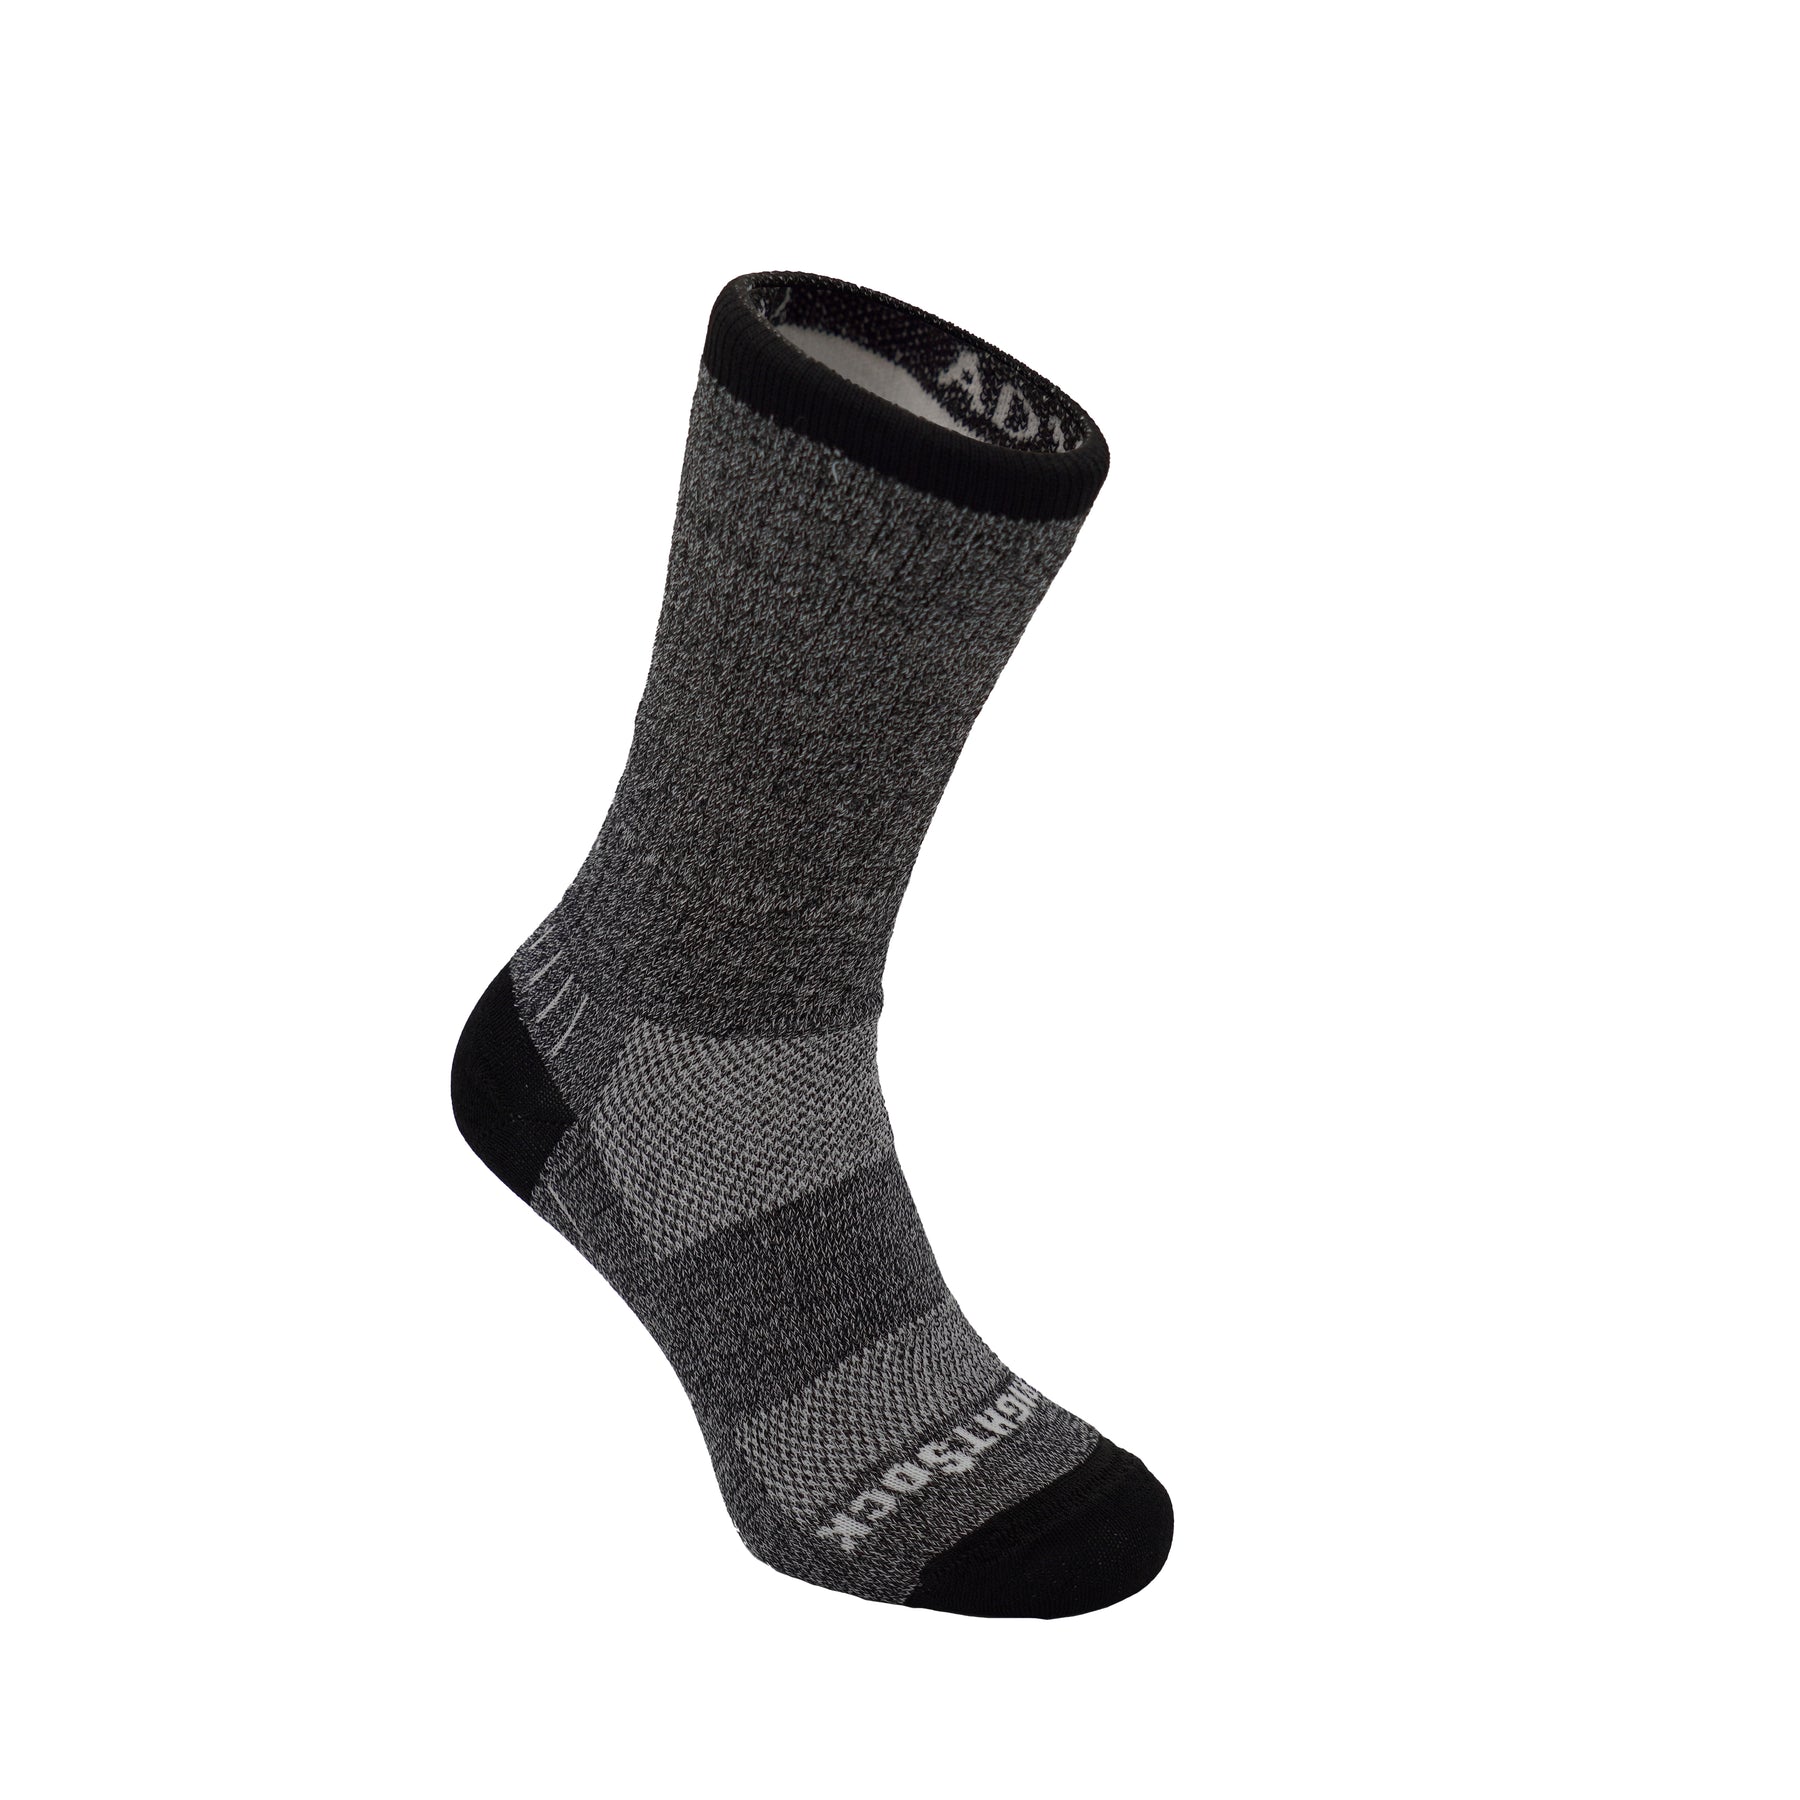 Anti Blister Running Socks and Blister Free Hiking Socks | Wrightsock